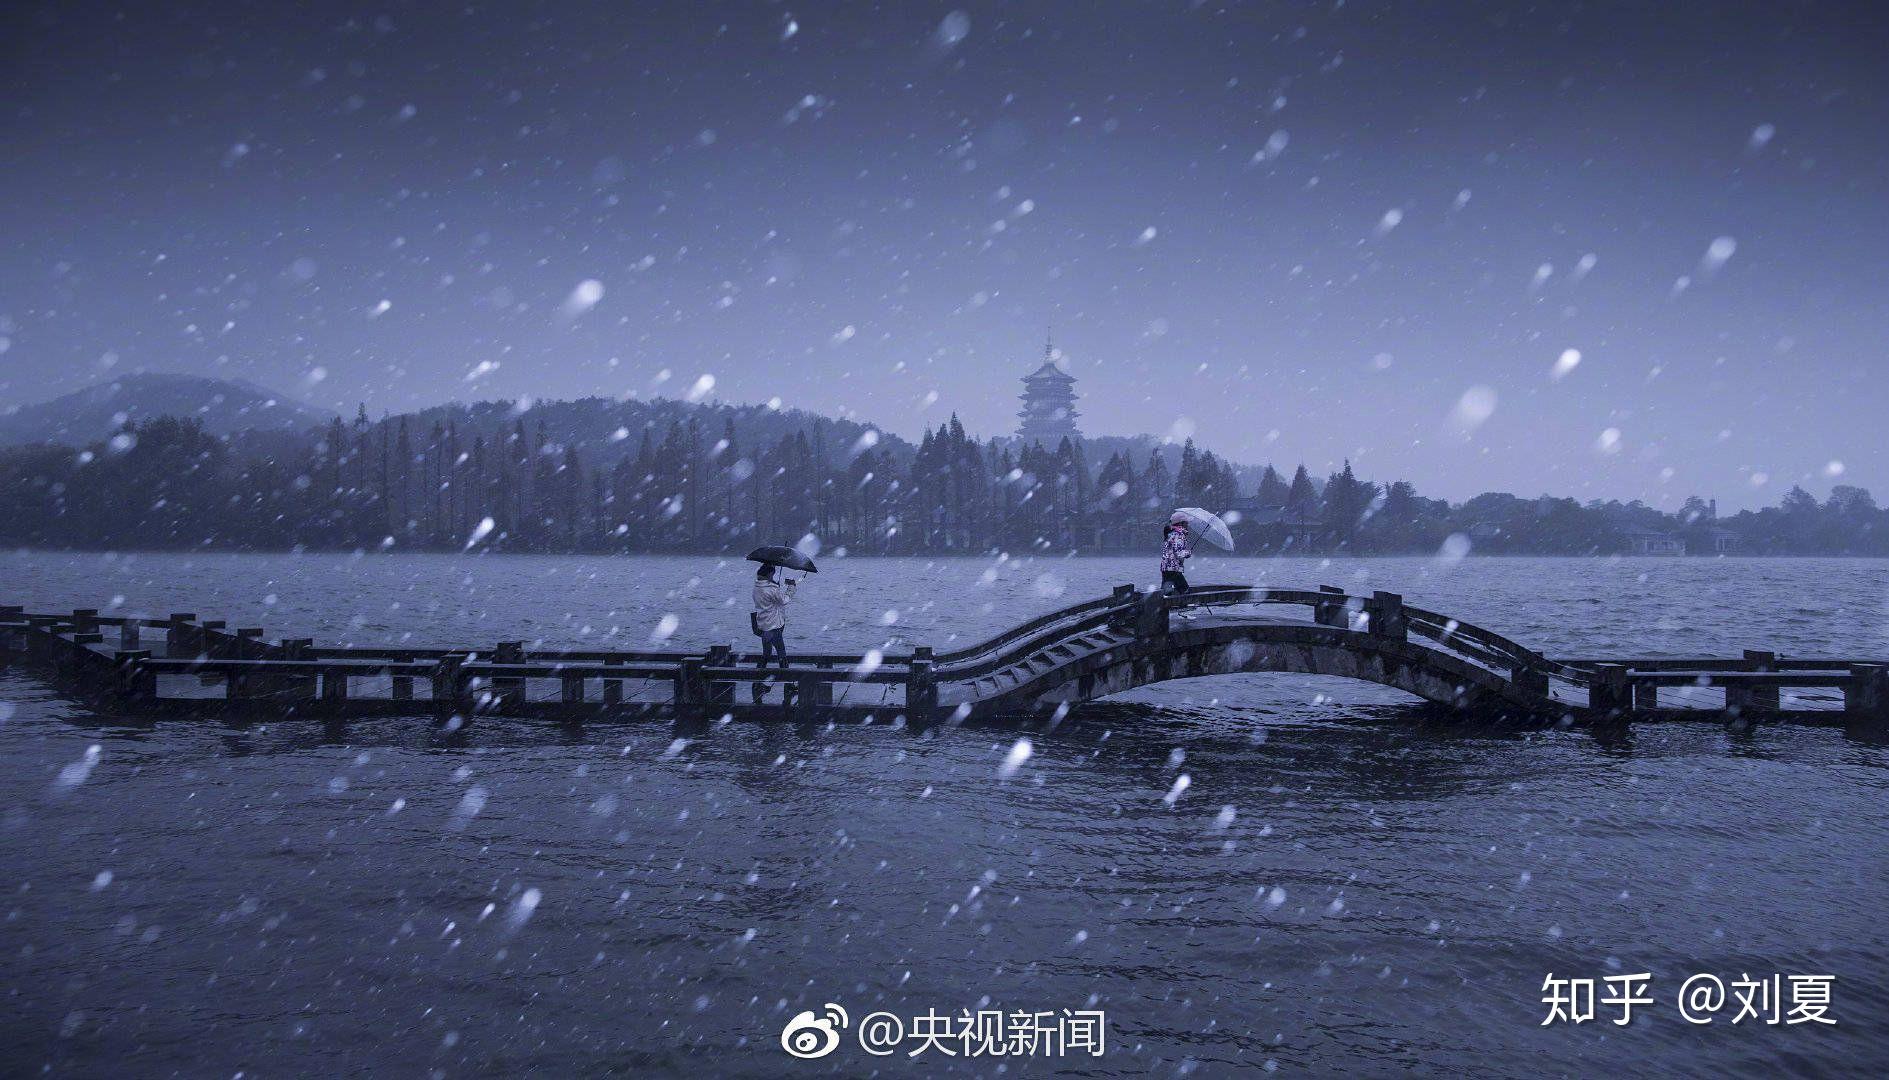 杭州最美西湖十景之断桥残雪风景壁纸 -桌面天下（Desktx.com）